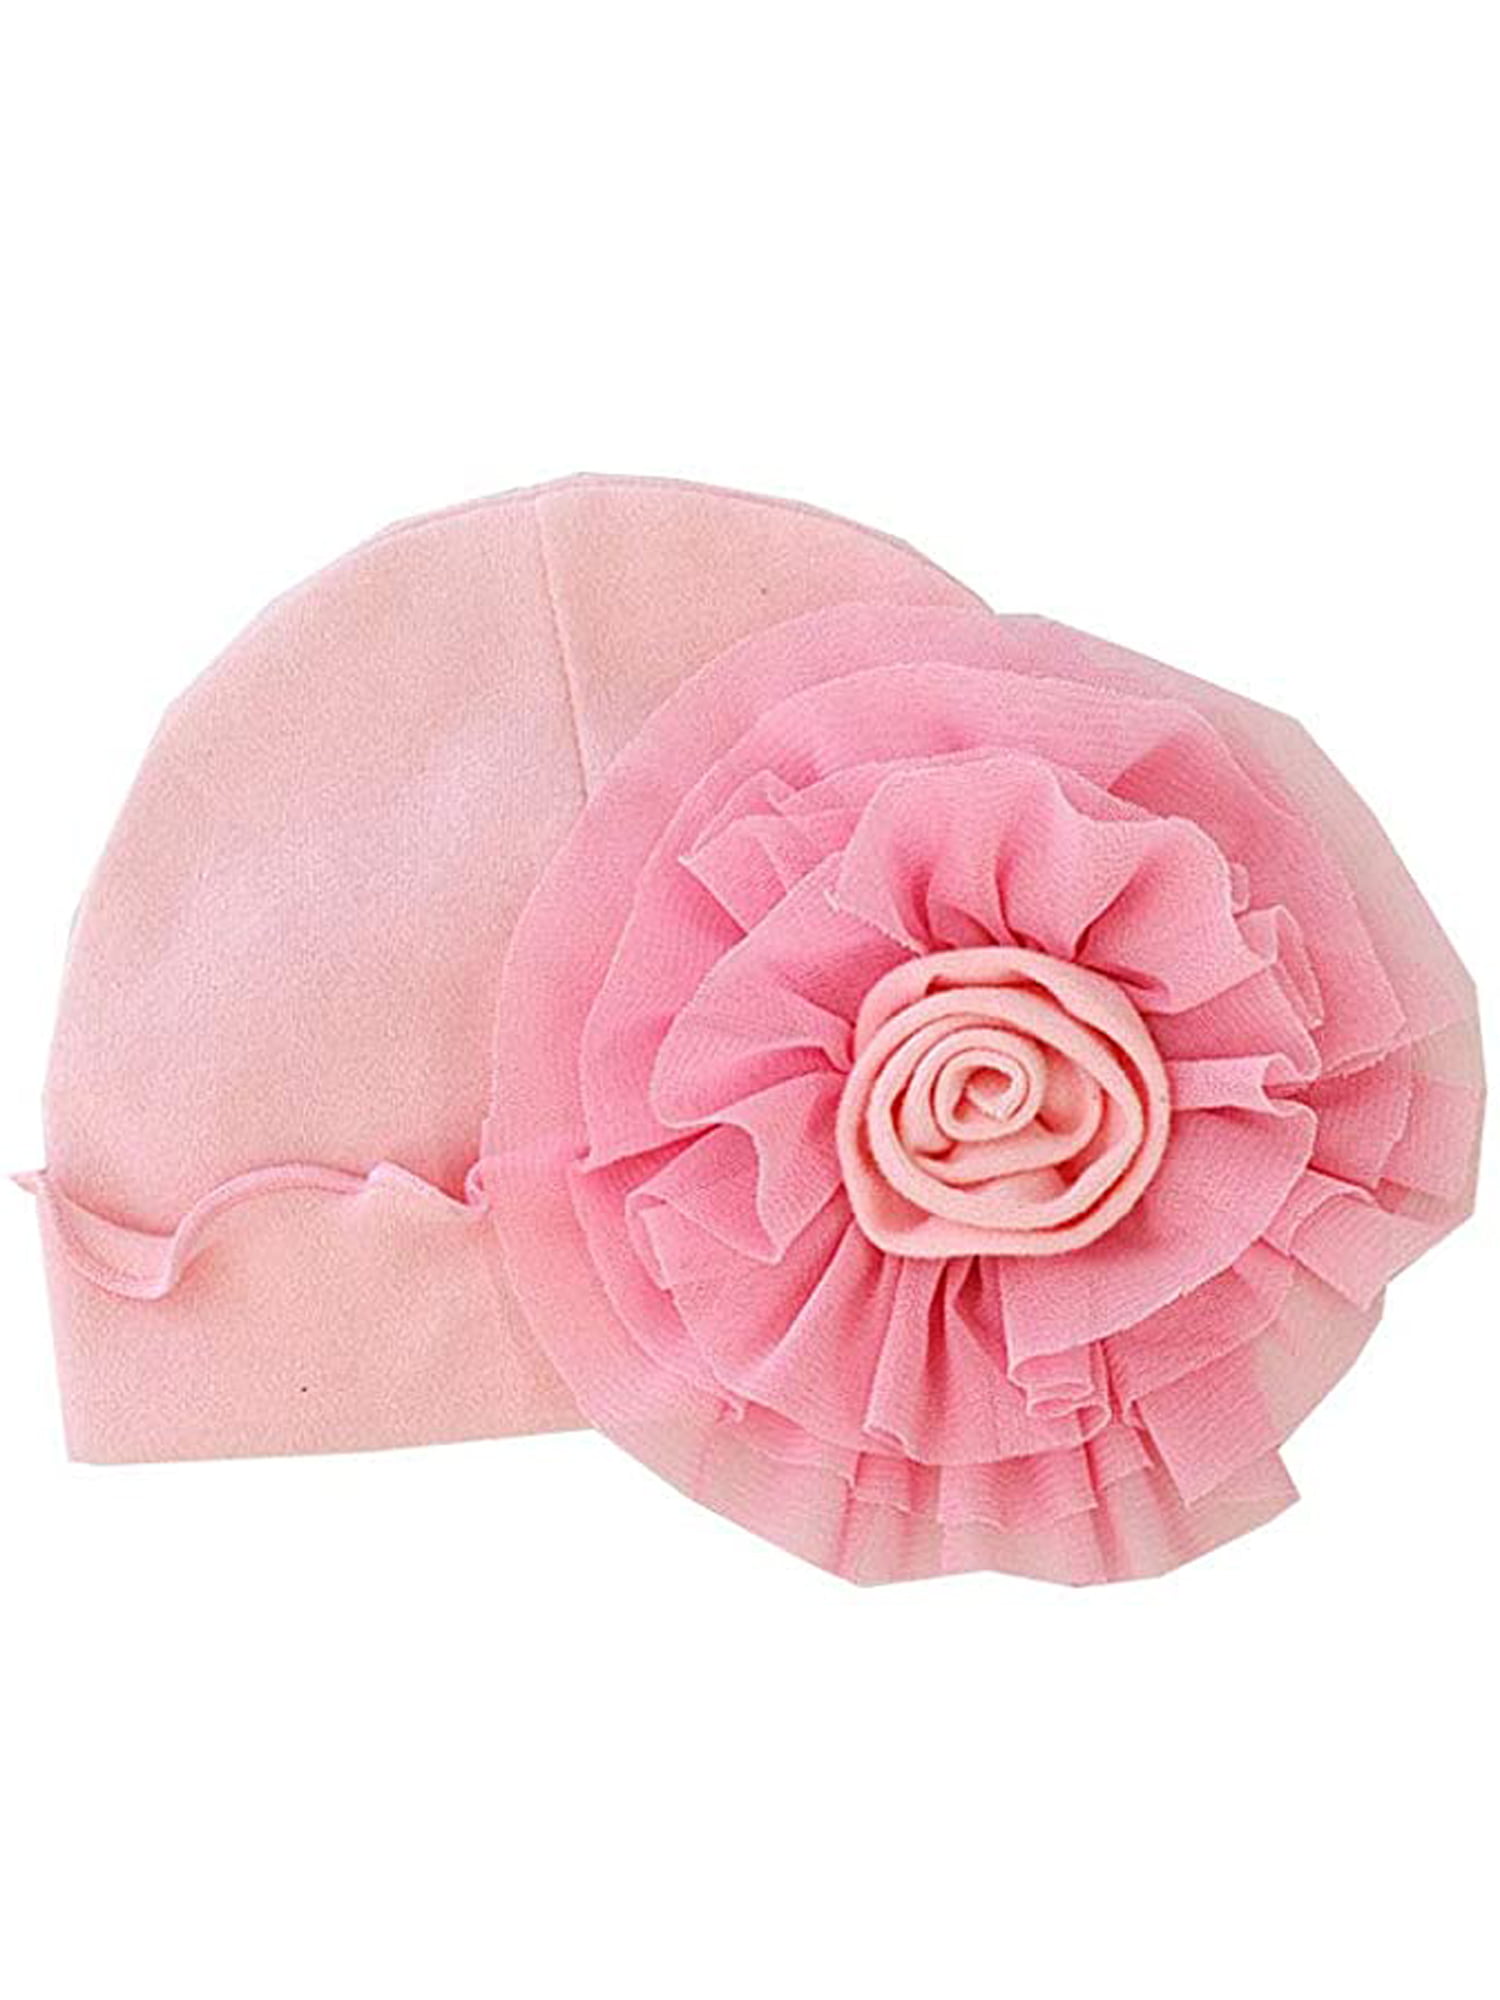 One Opening Princess Baby Girls 3D Flower Cotton Summer Sun Hat Cap Bonnet  - Walmart.com